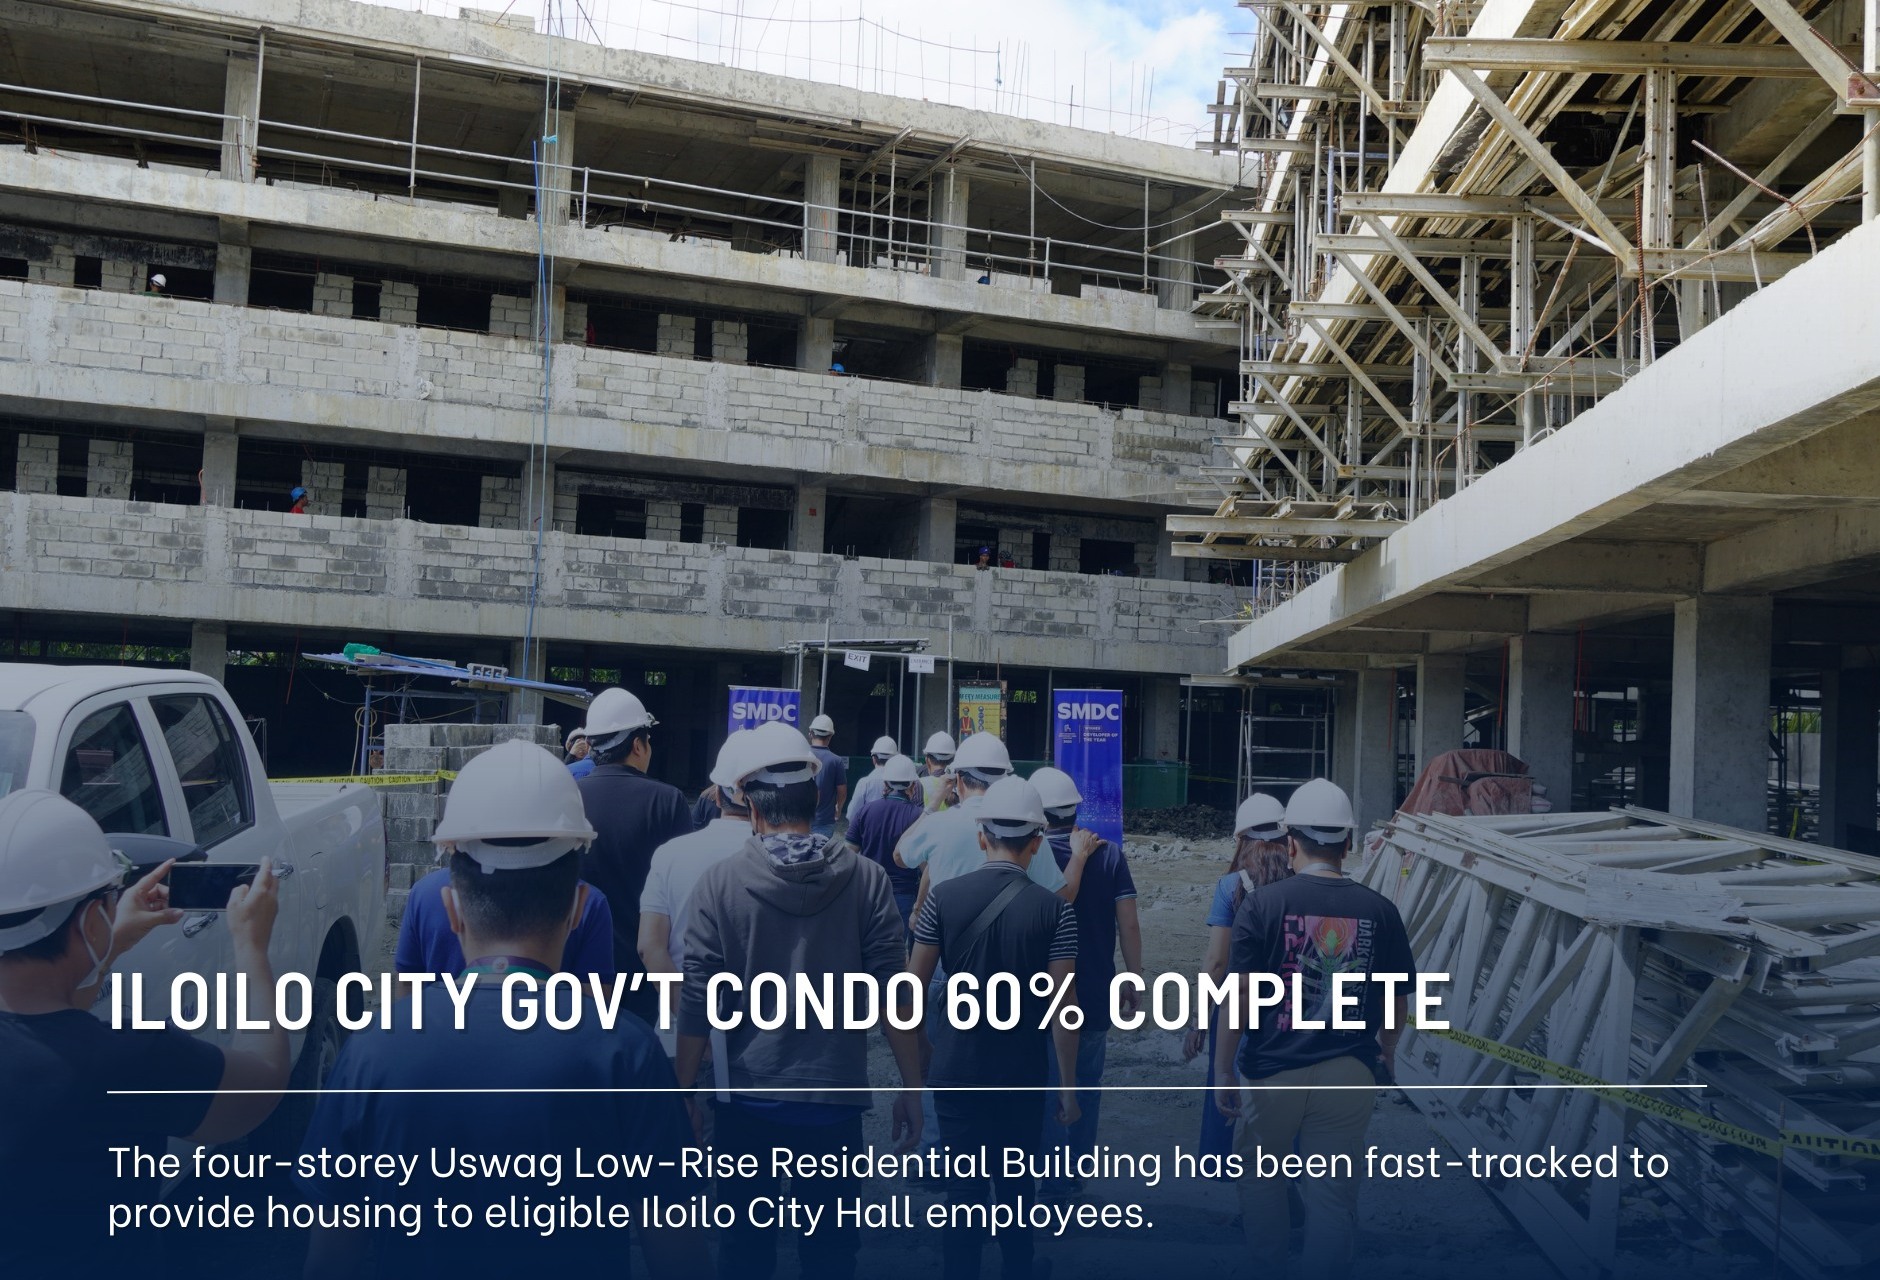 Iloilo City condo for employees